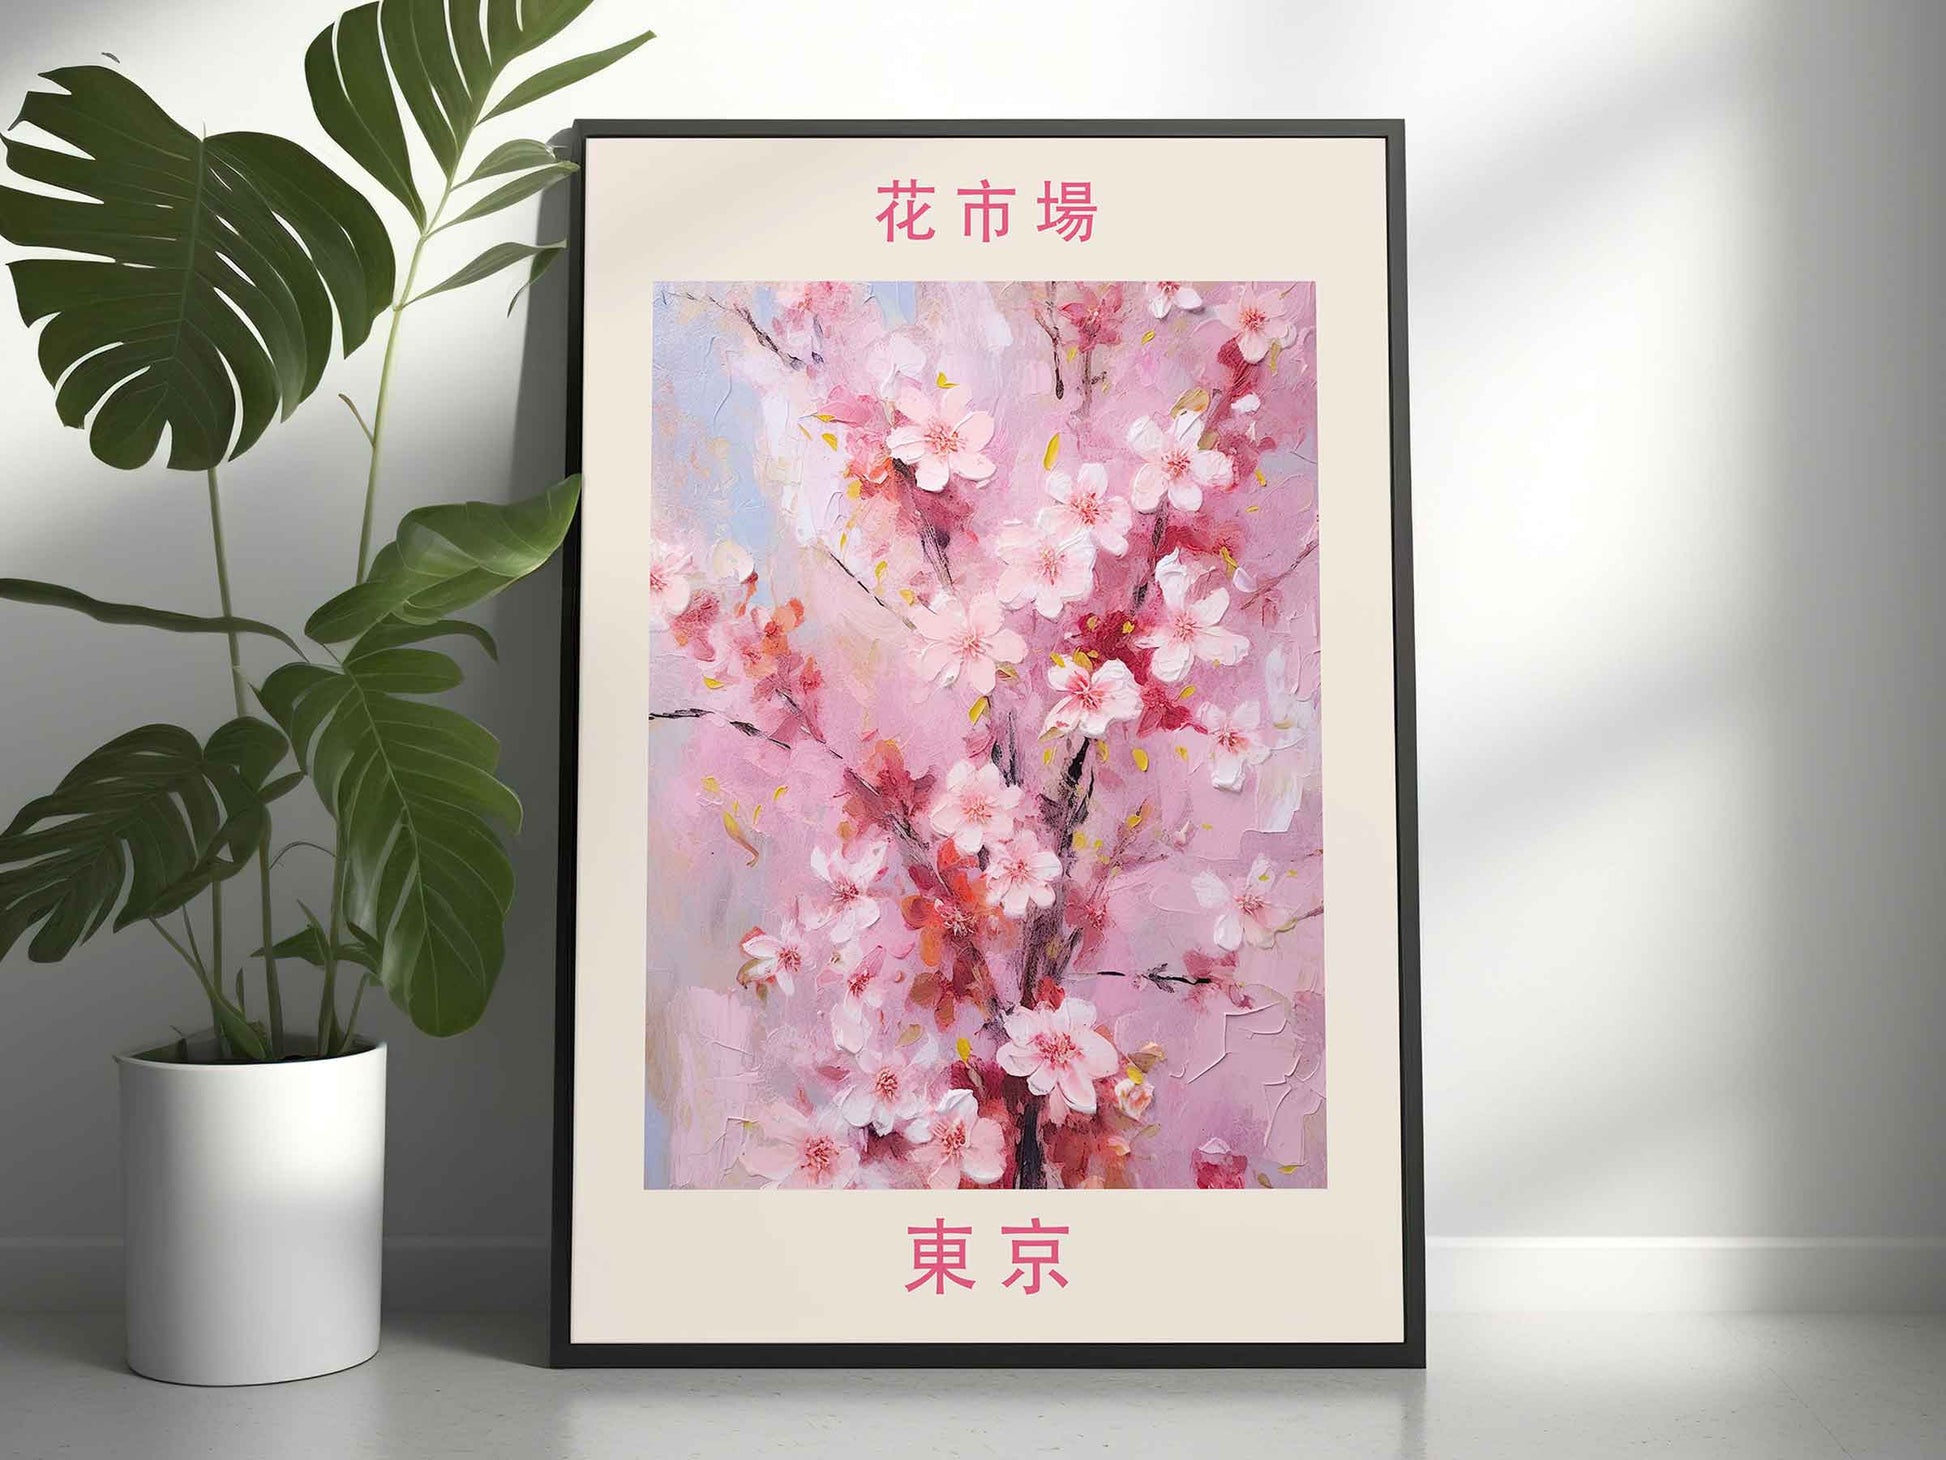 Framed Image of Tokyo Flower Market Prints Boho Botanical Vintage Painting Wall Art Posters